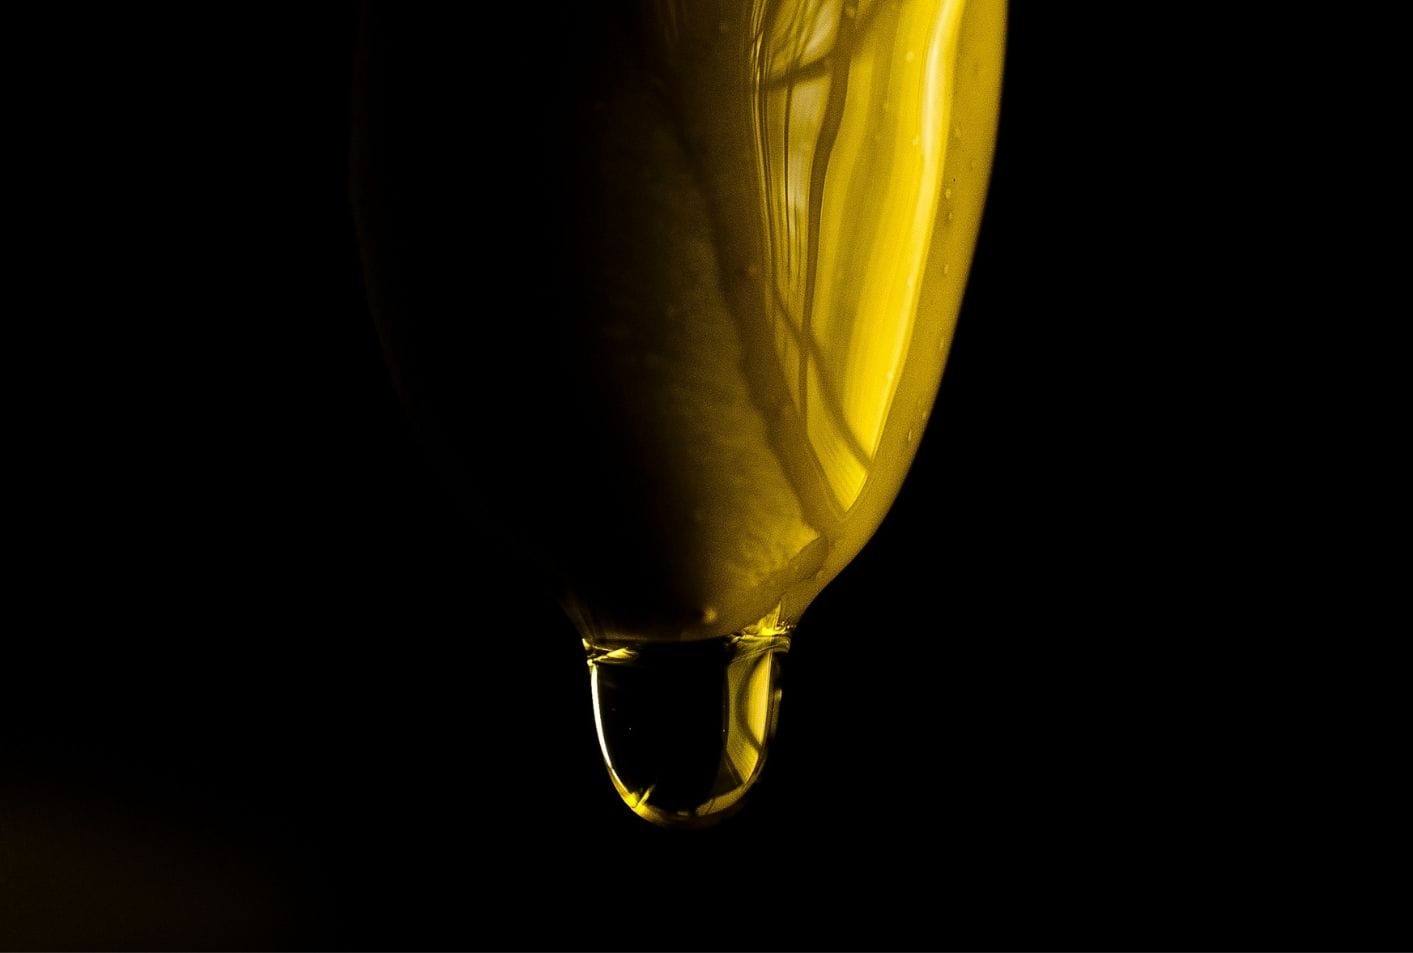 Beneficios del aceite de oliva extra virgen